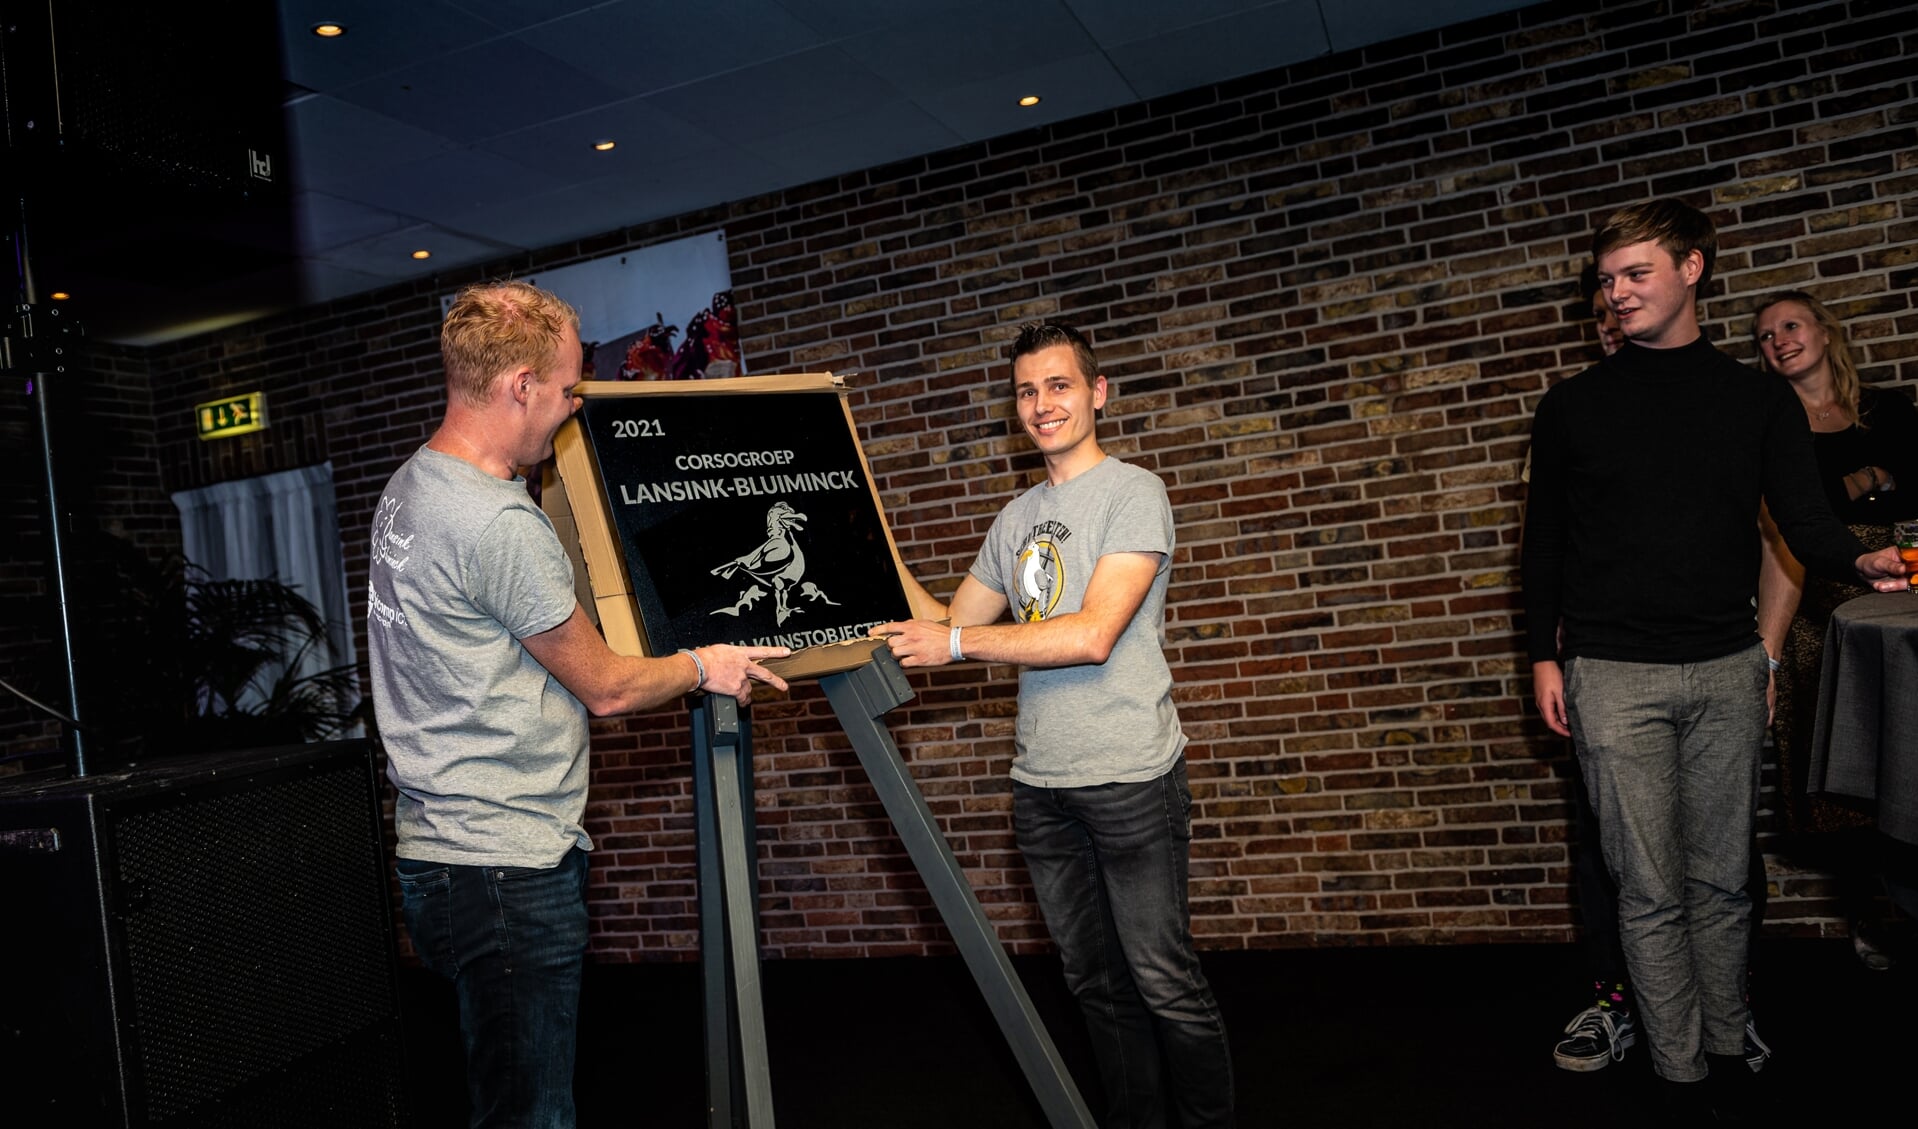 Voorzitter Ewald Berendsen en ontwerper Mark Muller van Lansink-Bluiminck onthullen de plaquette van hun winnende kunstobject ‘Schijtbeesten’.
Foto: Rick Mellink
